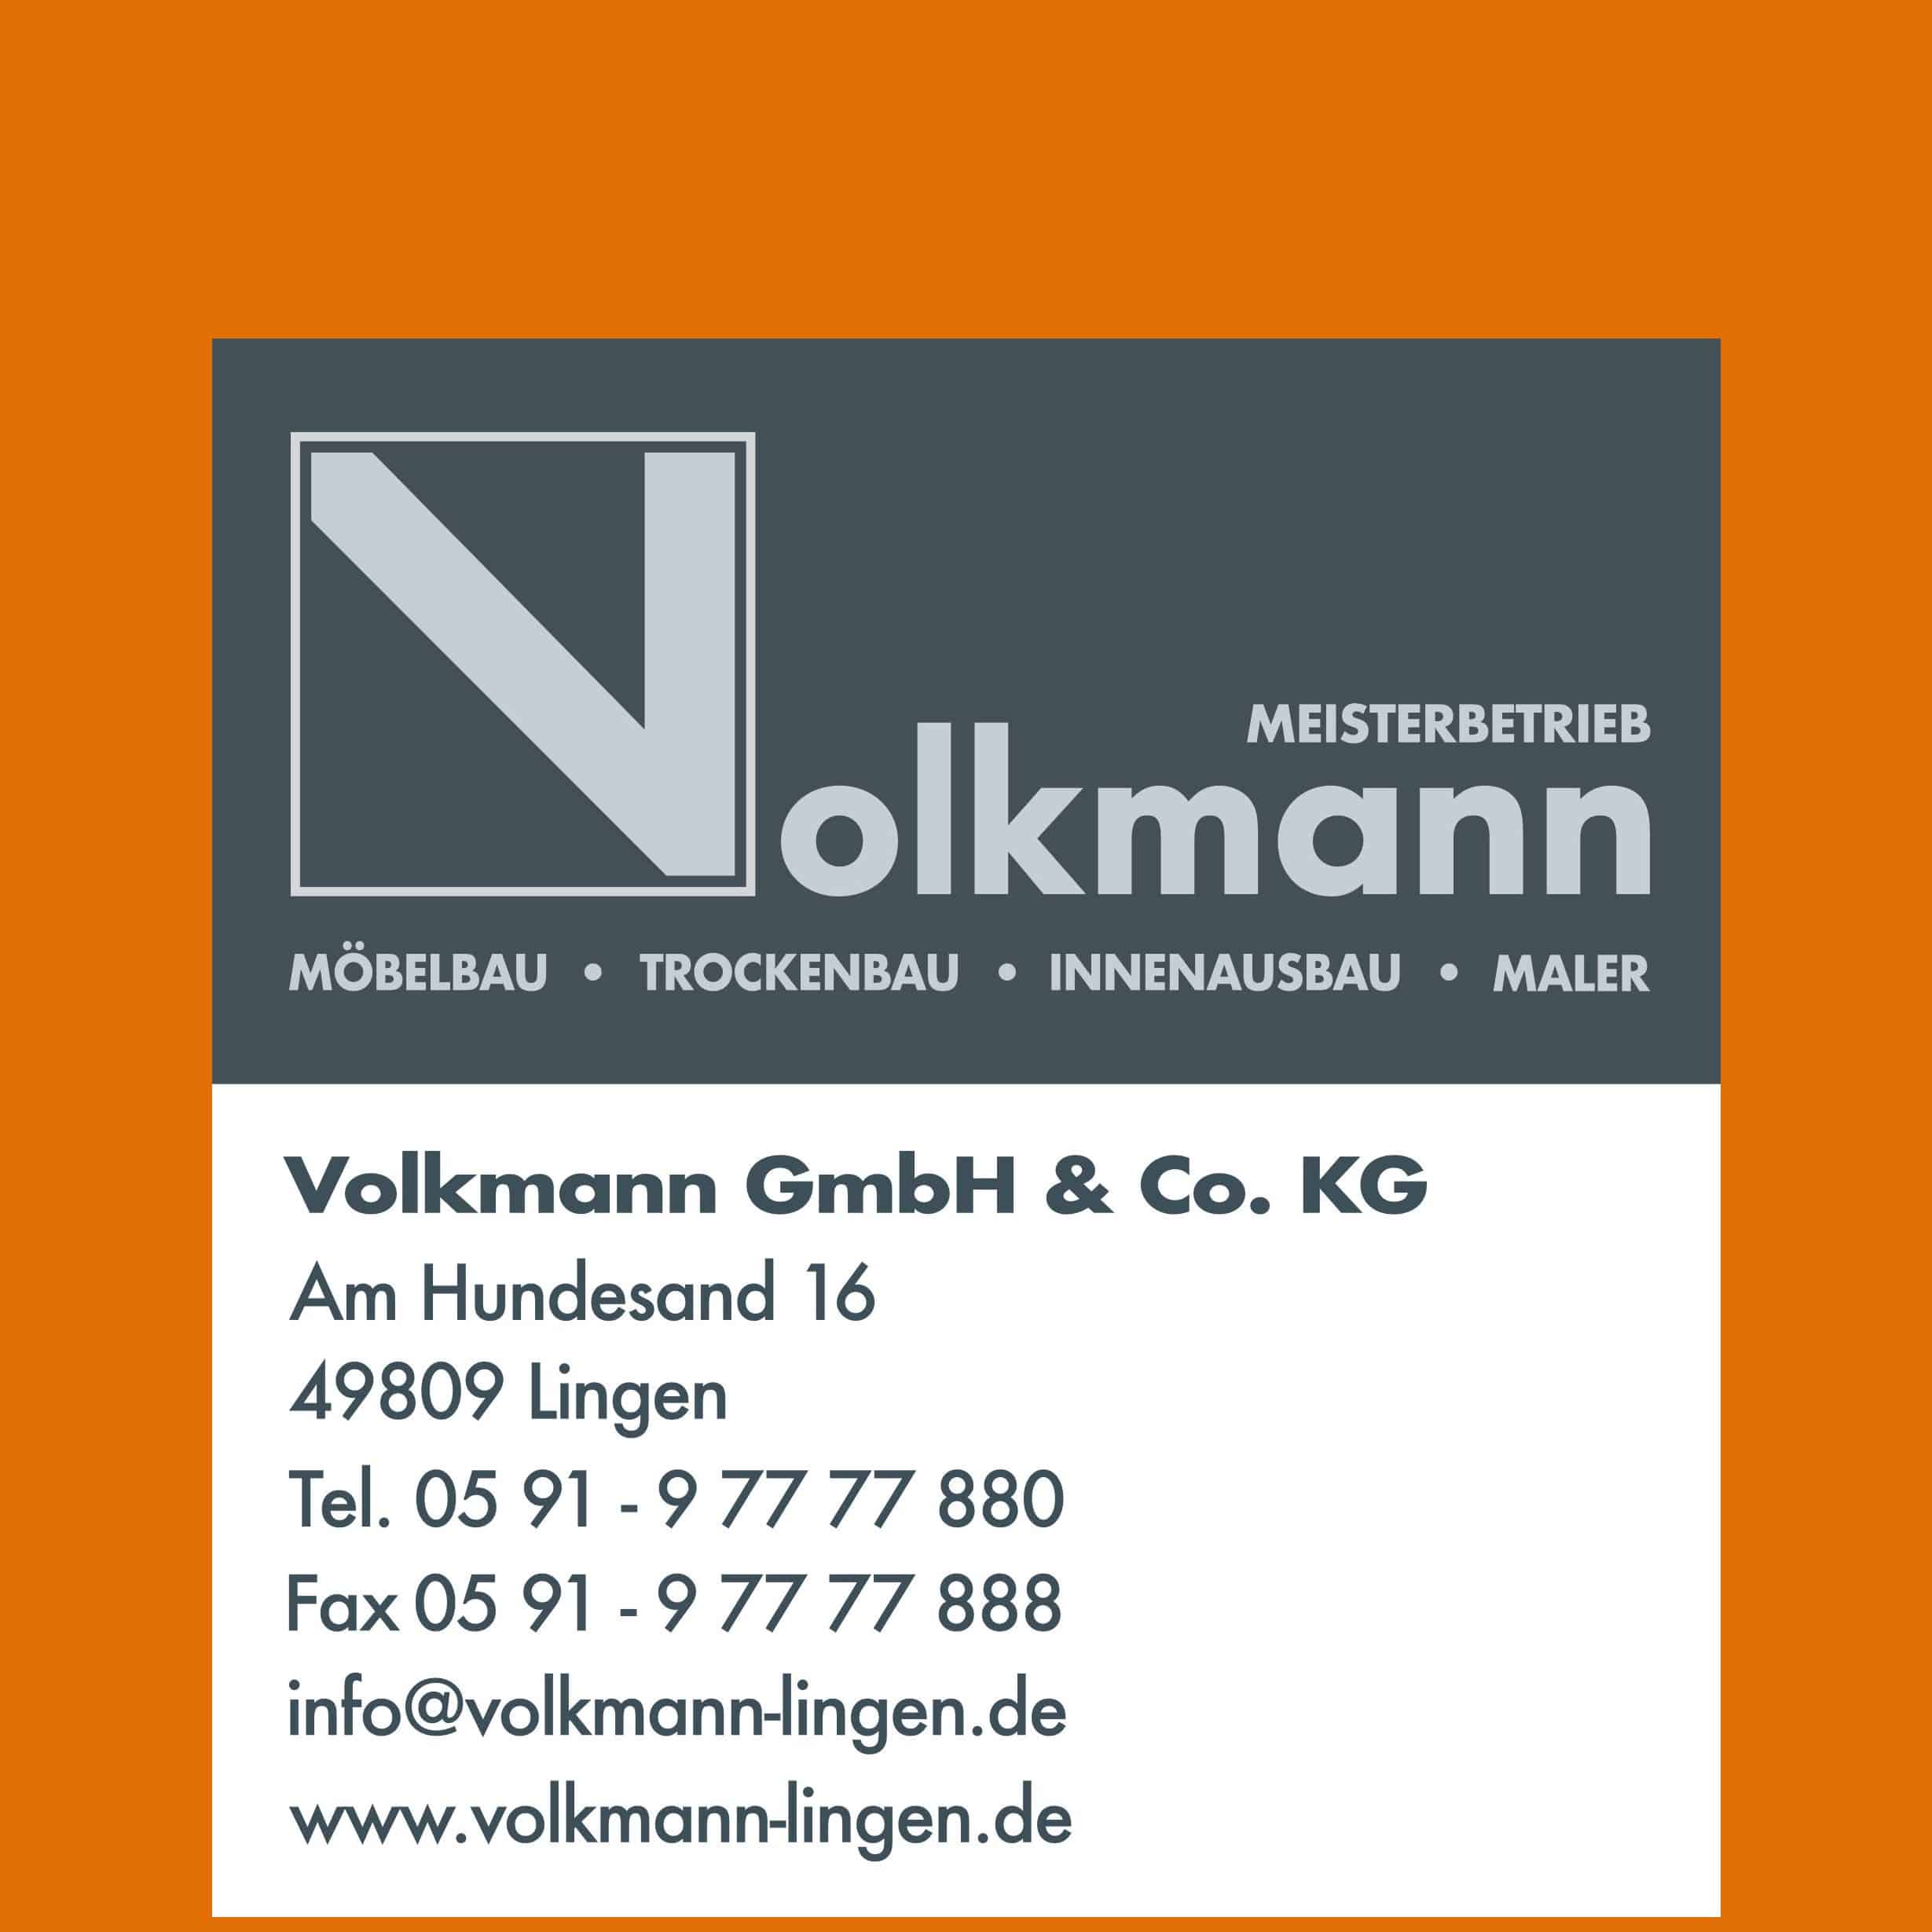 Volkmann GmbH & Co. KG Jobs